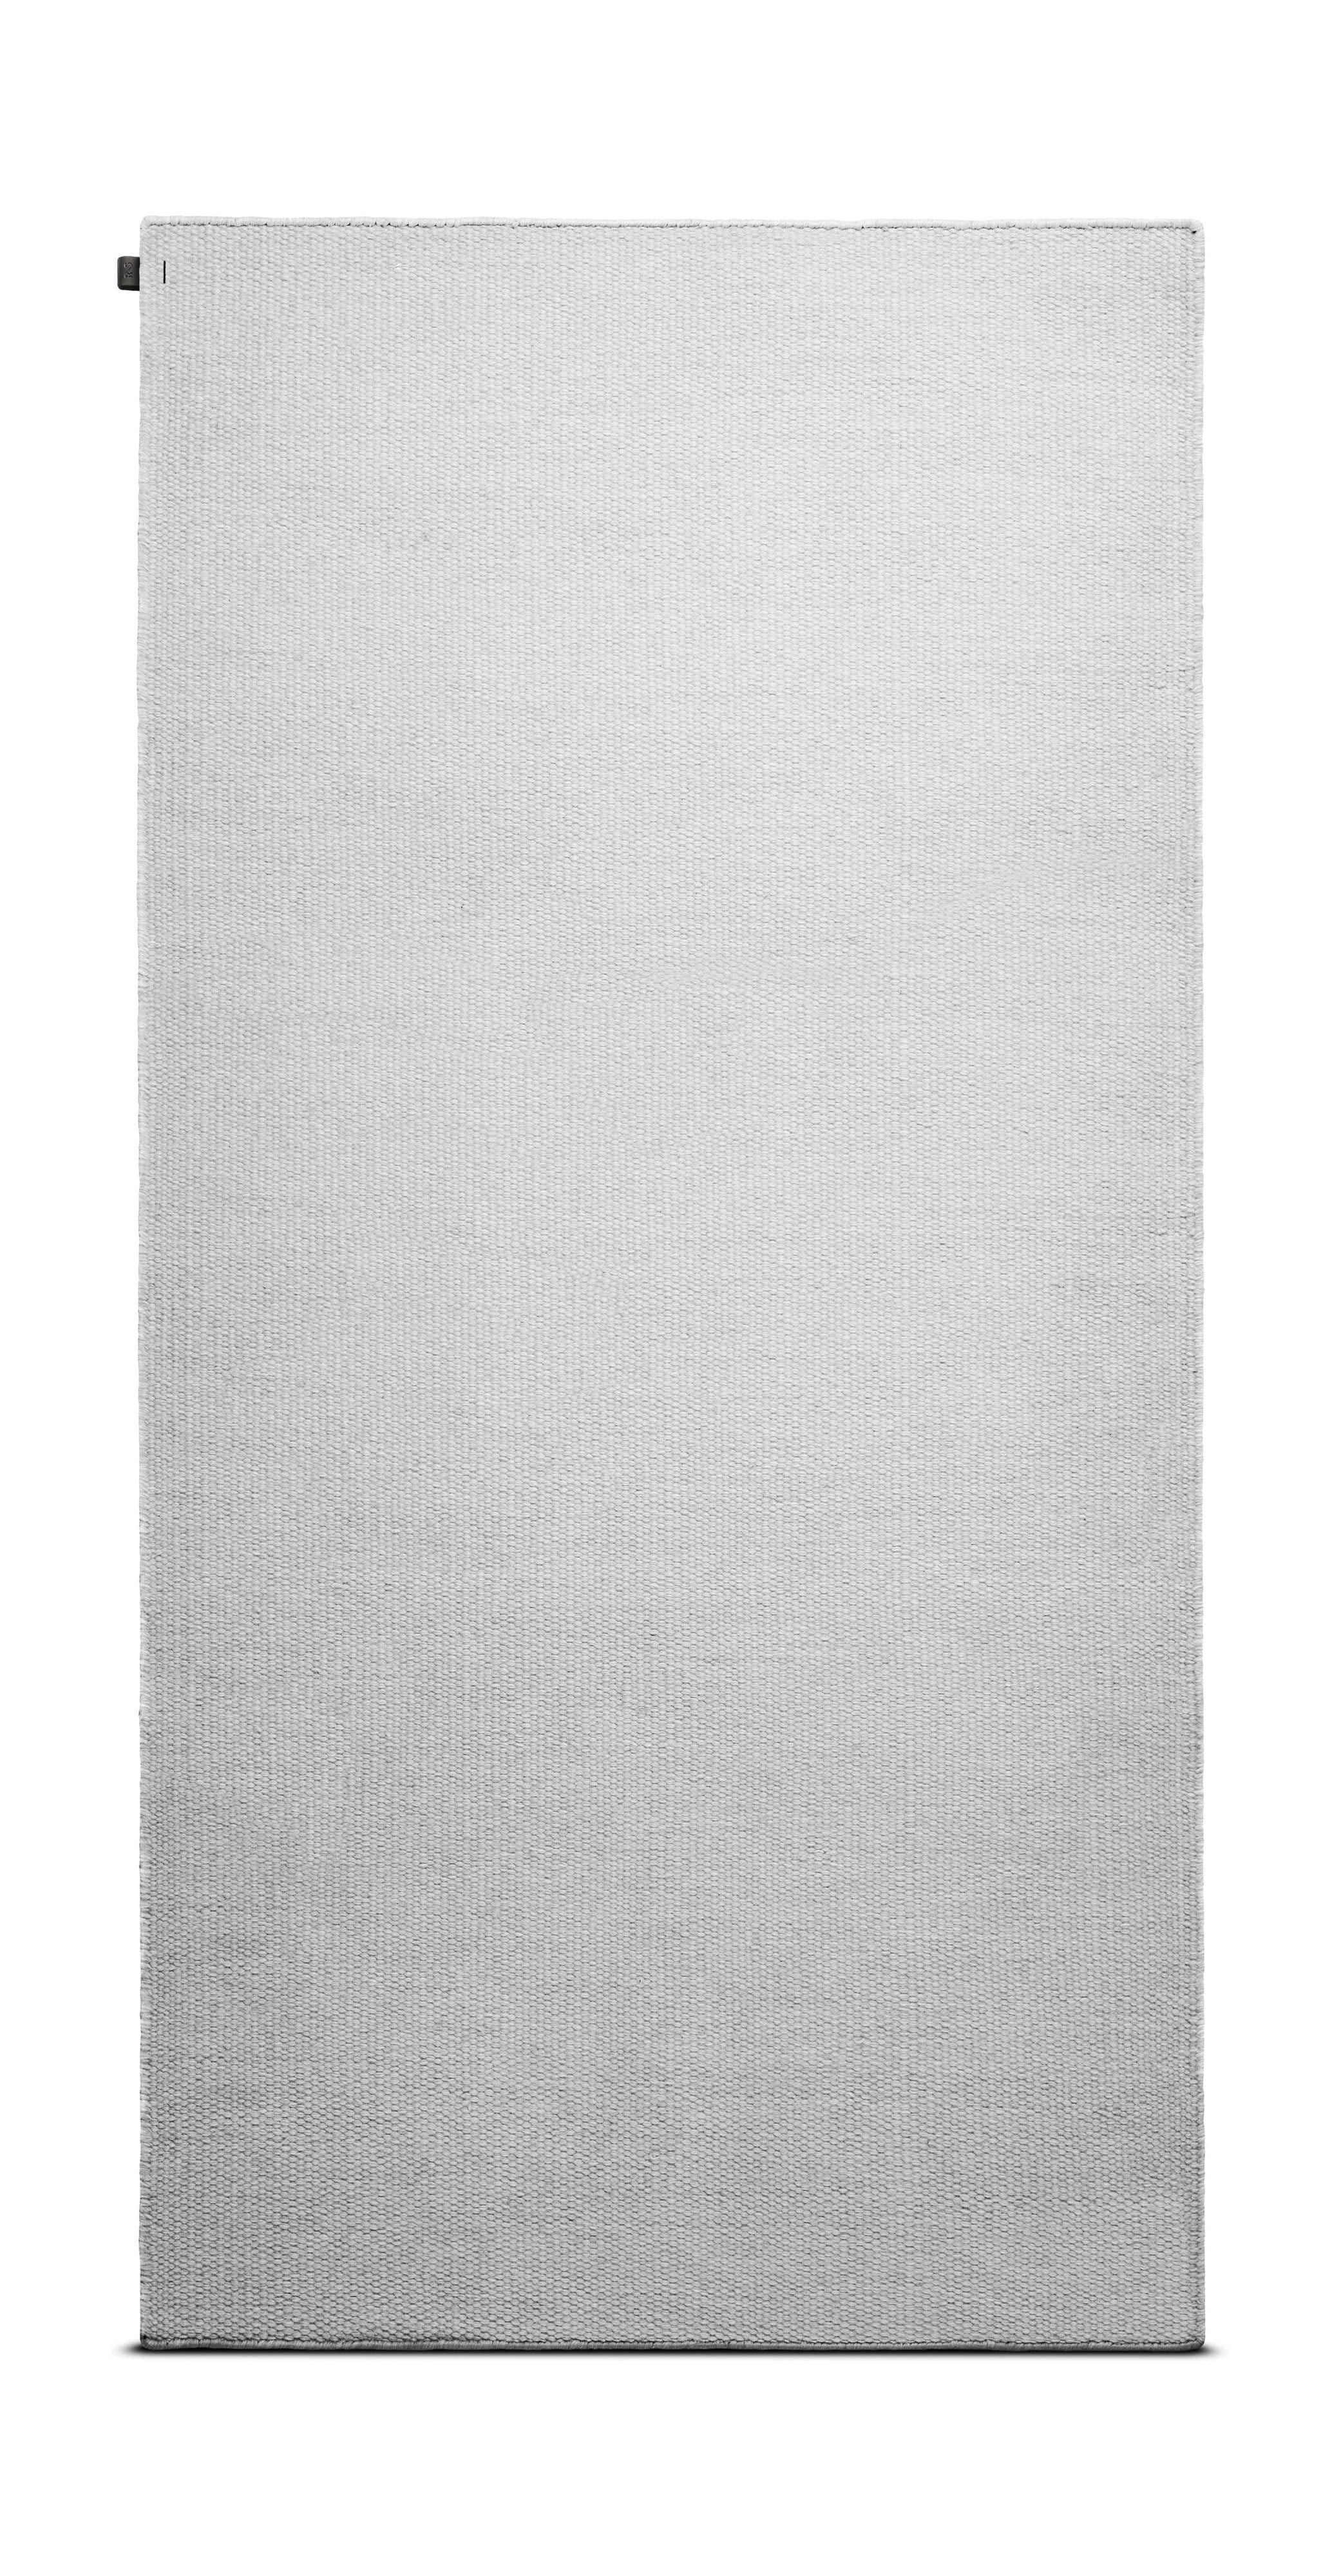 Rug Solid Huisdier tapijt 200 x 300 cm, maan